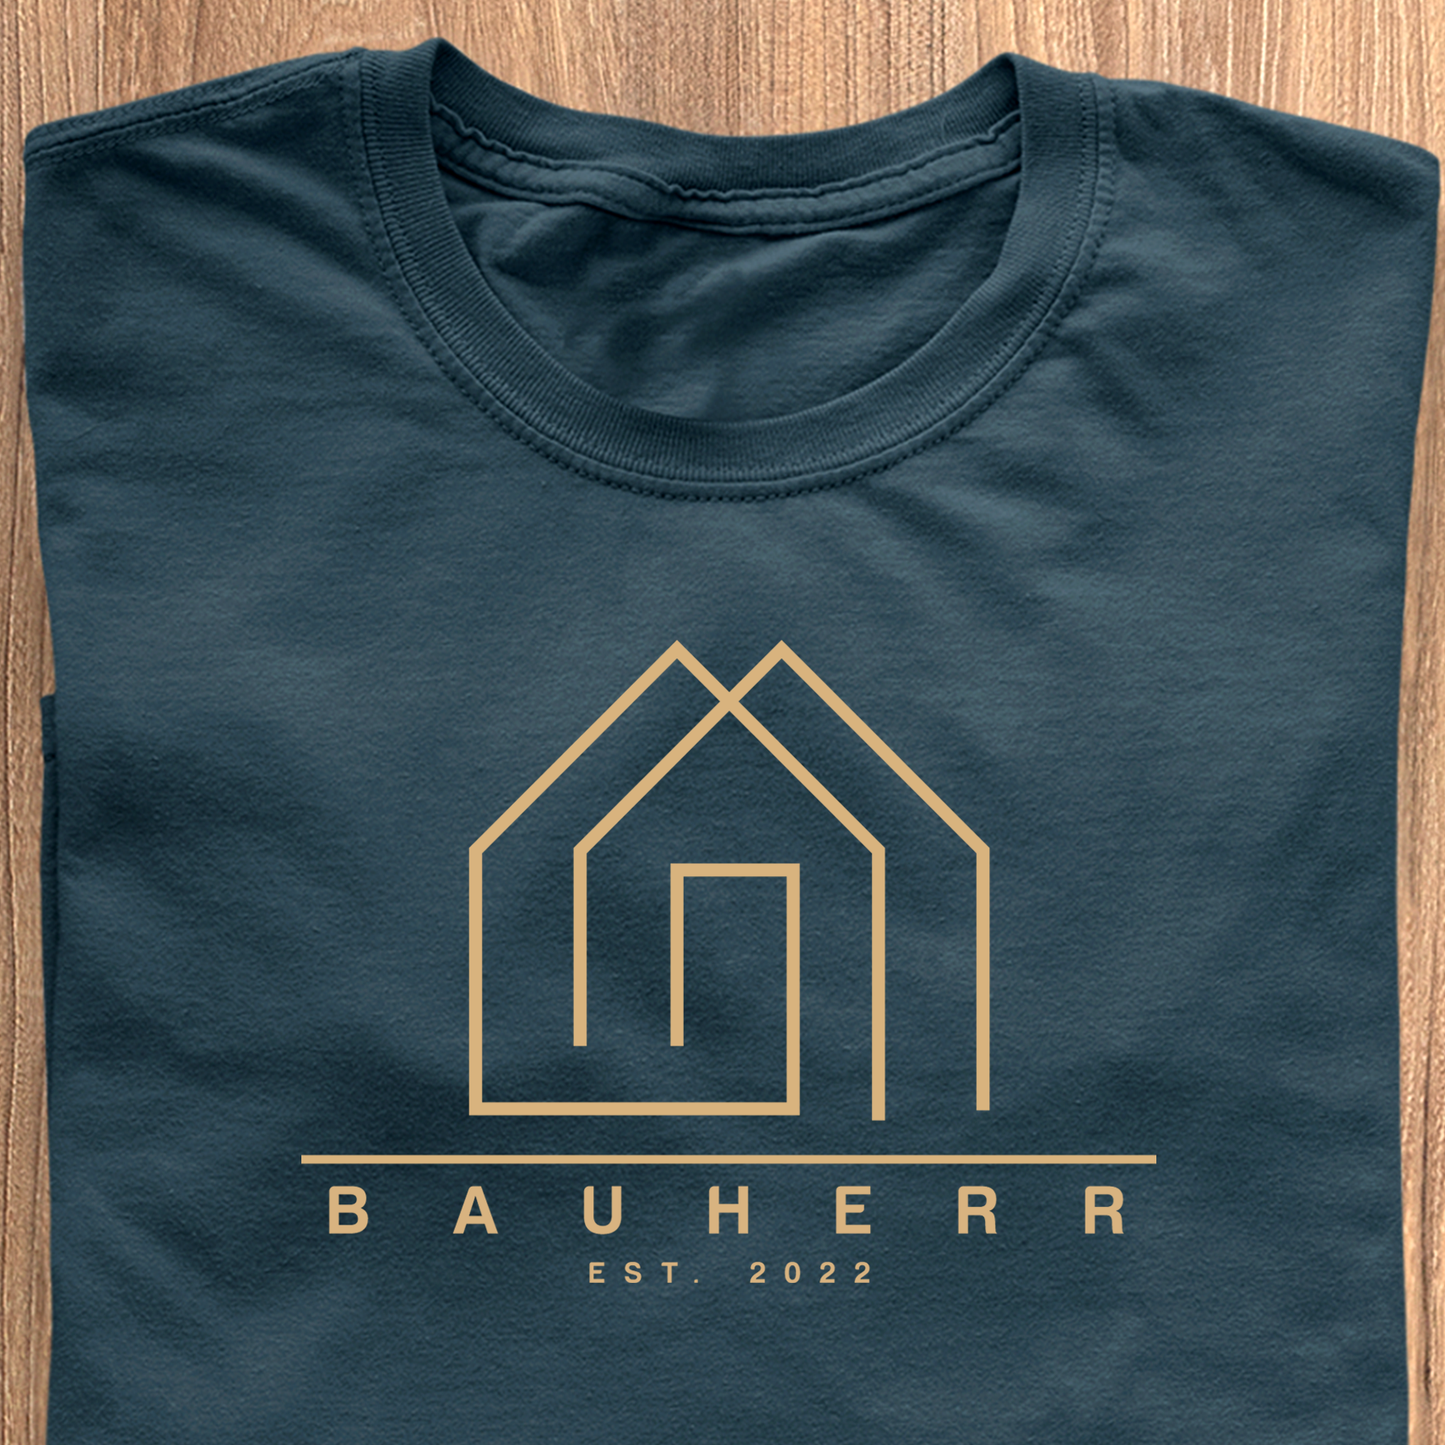 Bauherr - Datum personalisiert - Premium Shirt